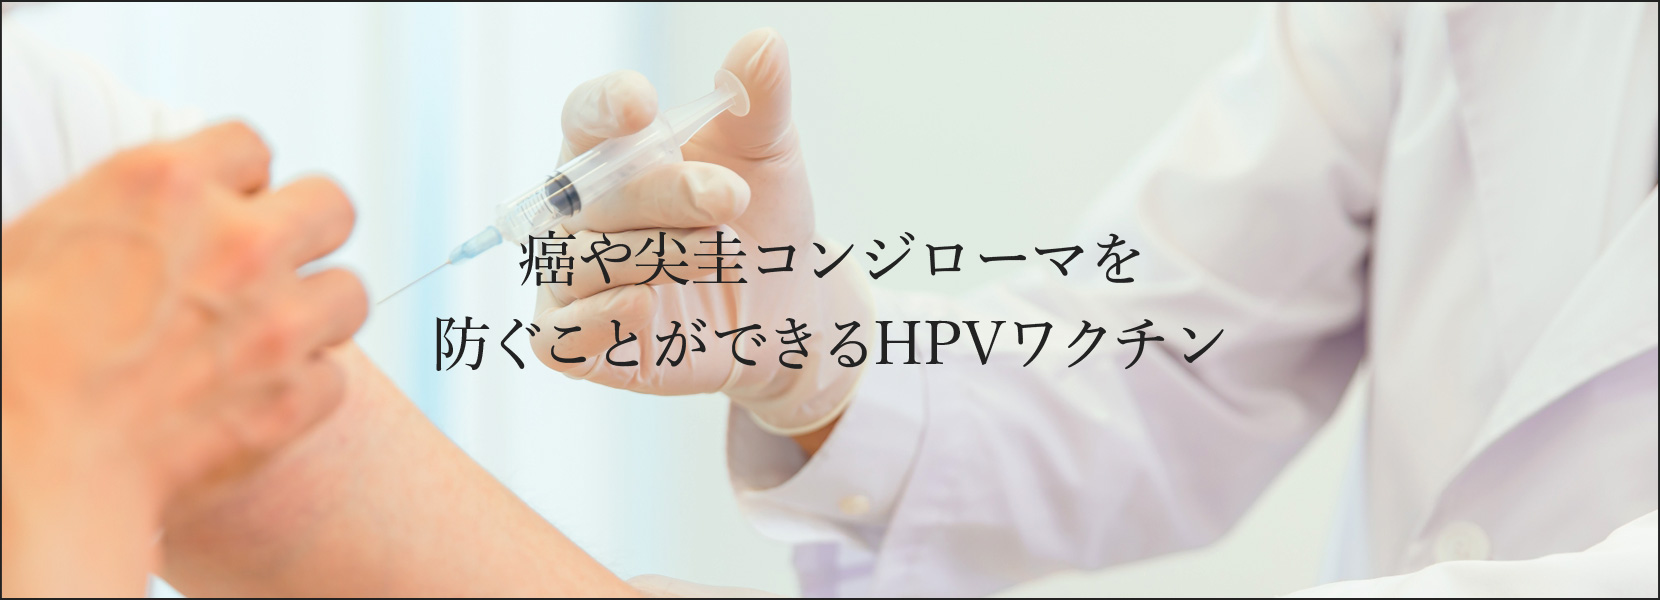 HPVワクチンメイン画像